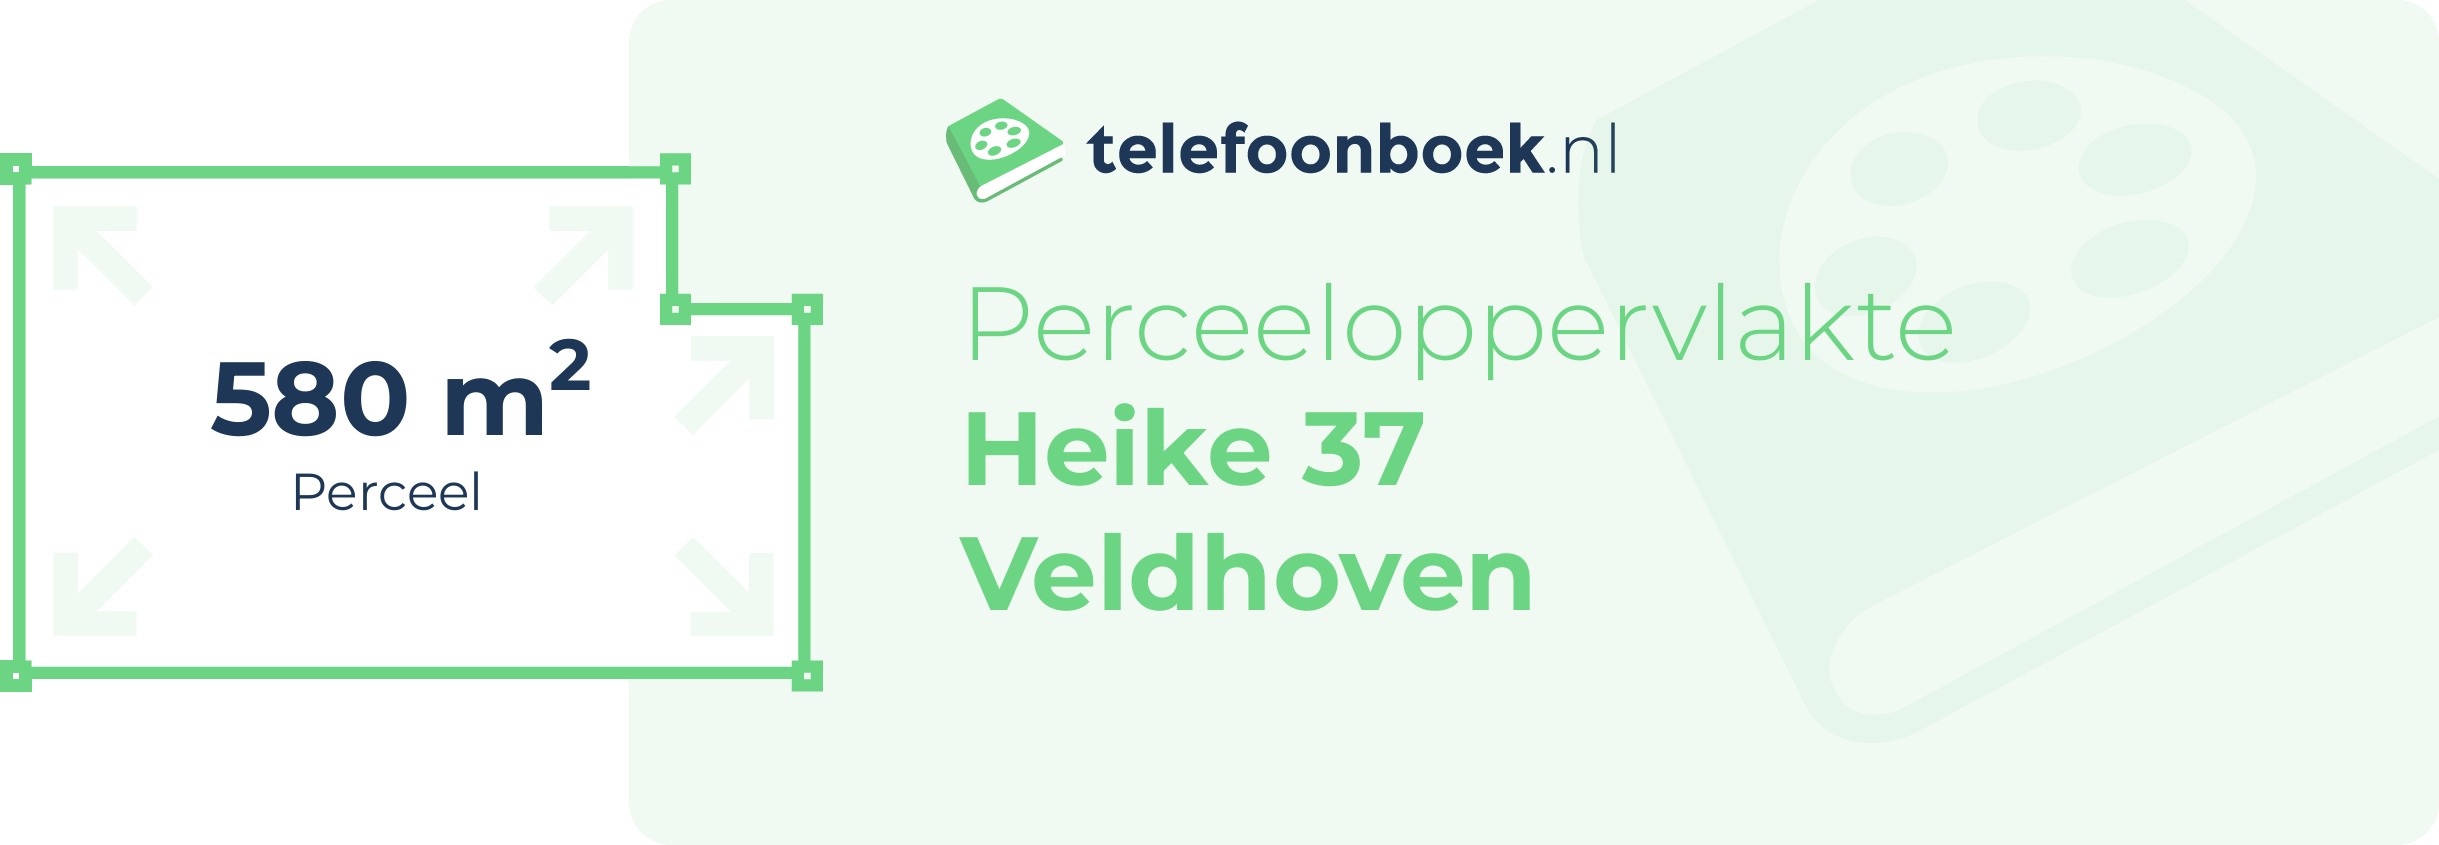 Perceeloppervlakte Heike 37 Veldhoven